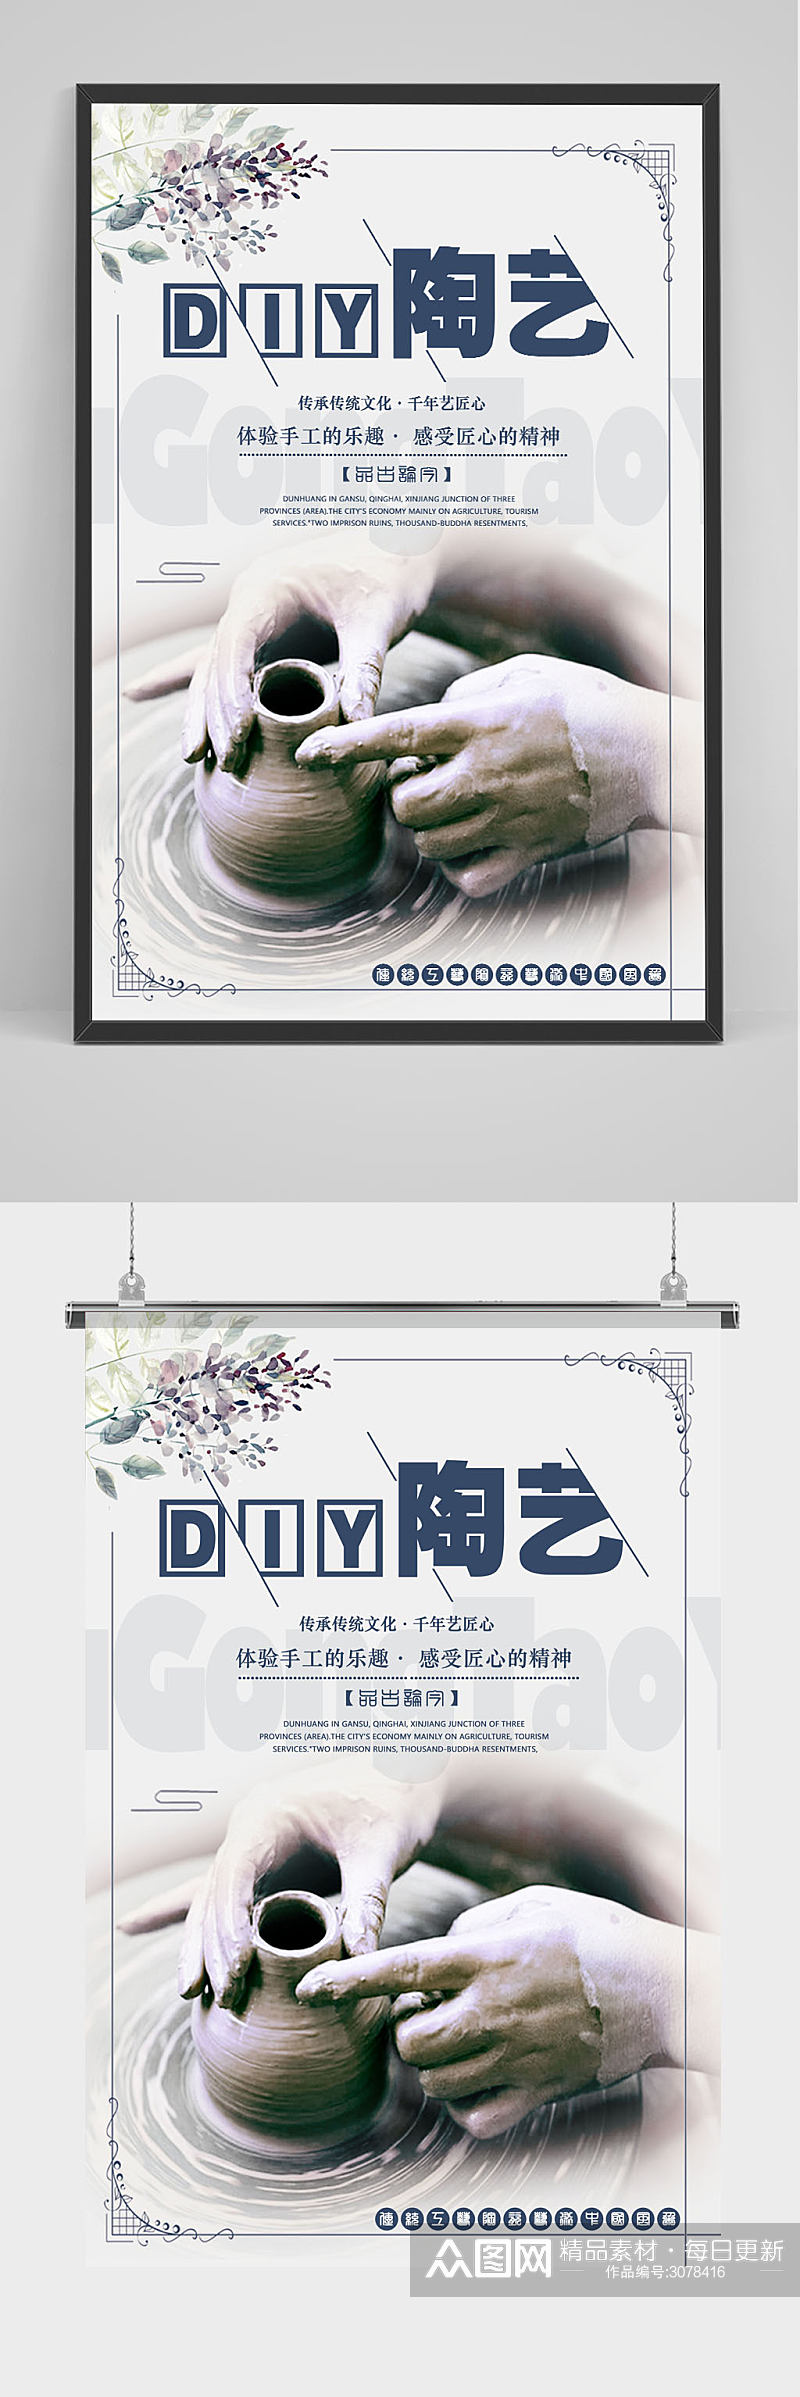 DIY陶艺手工陶艺海报宣传设计模板素材